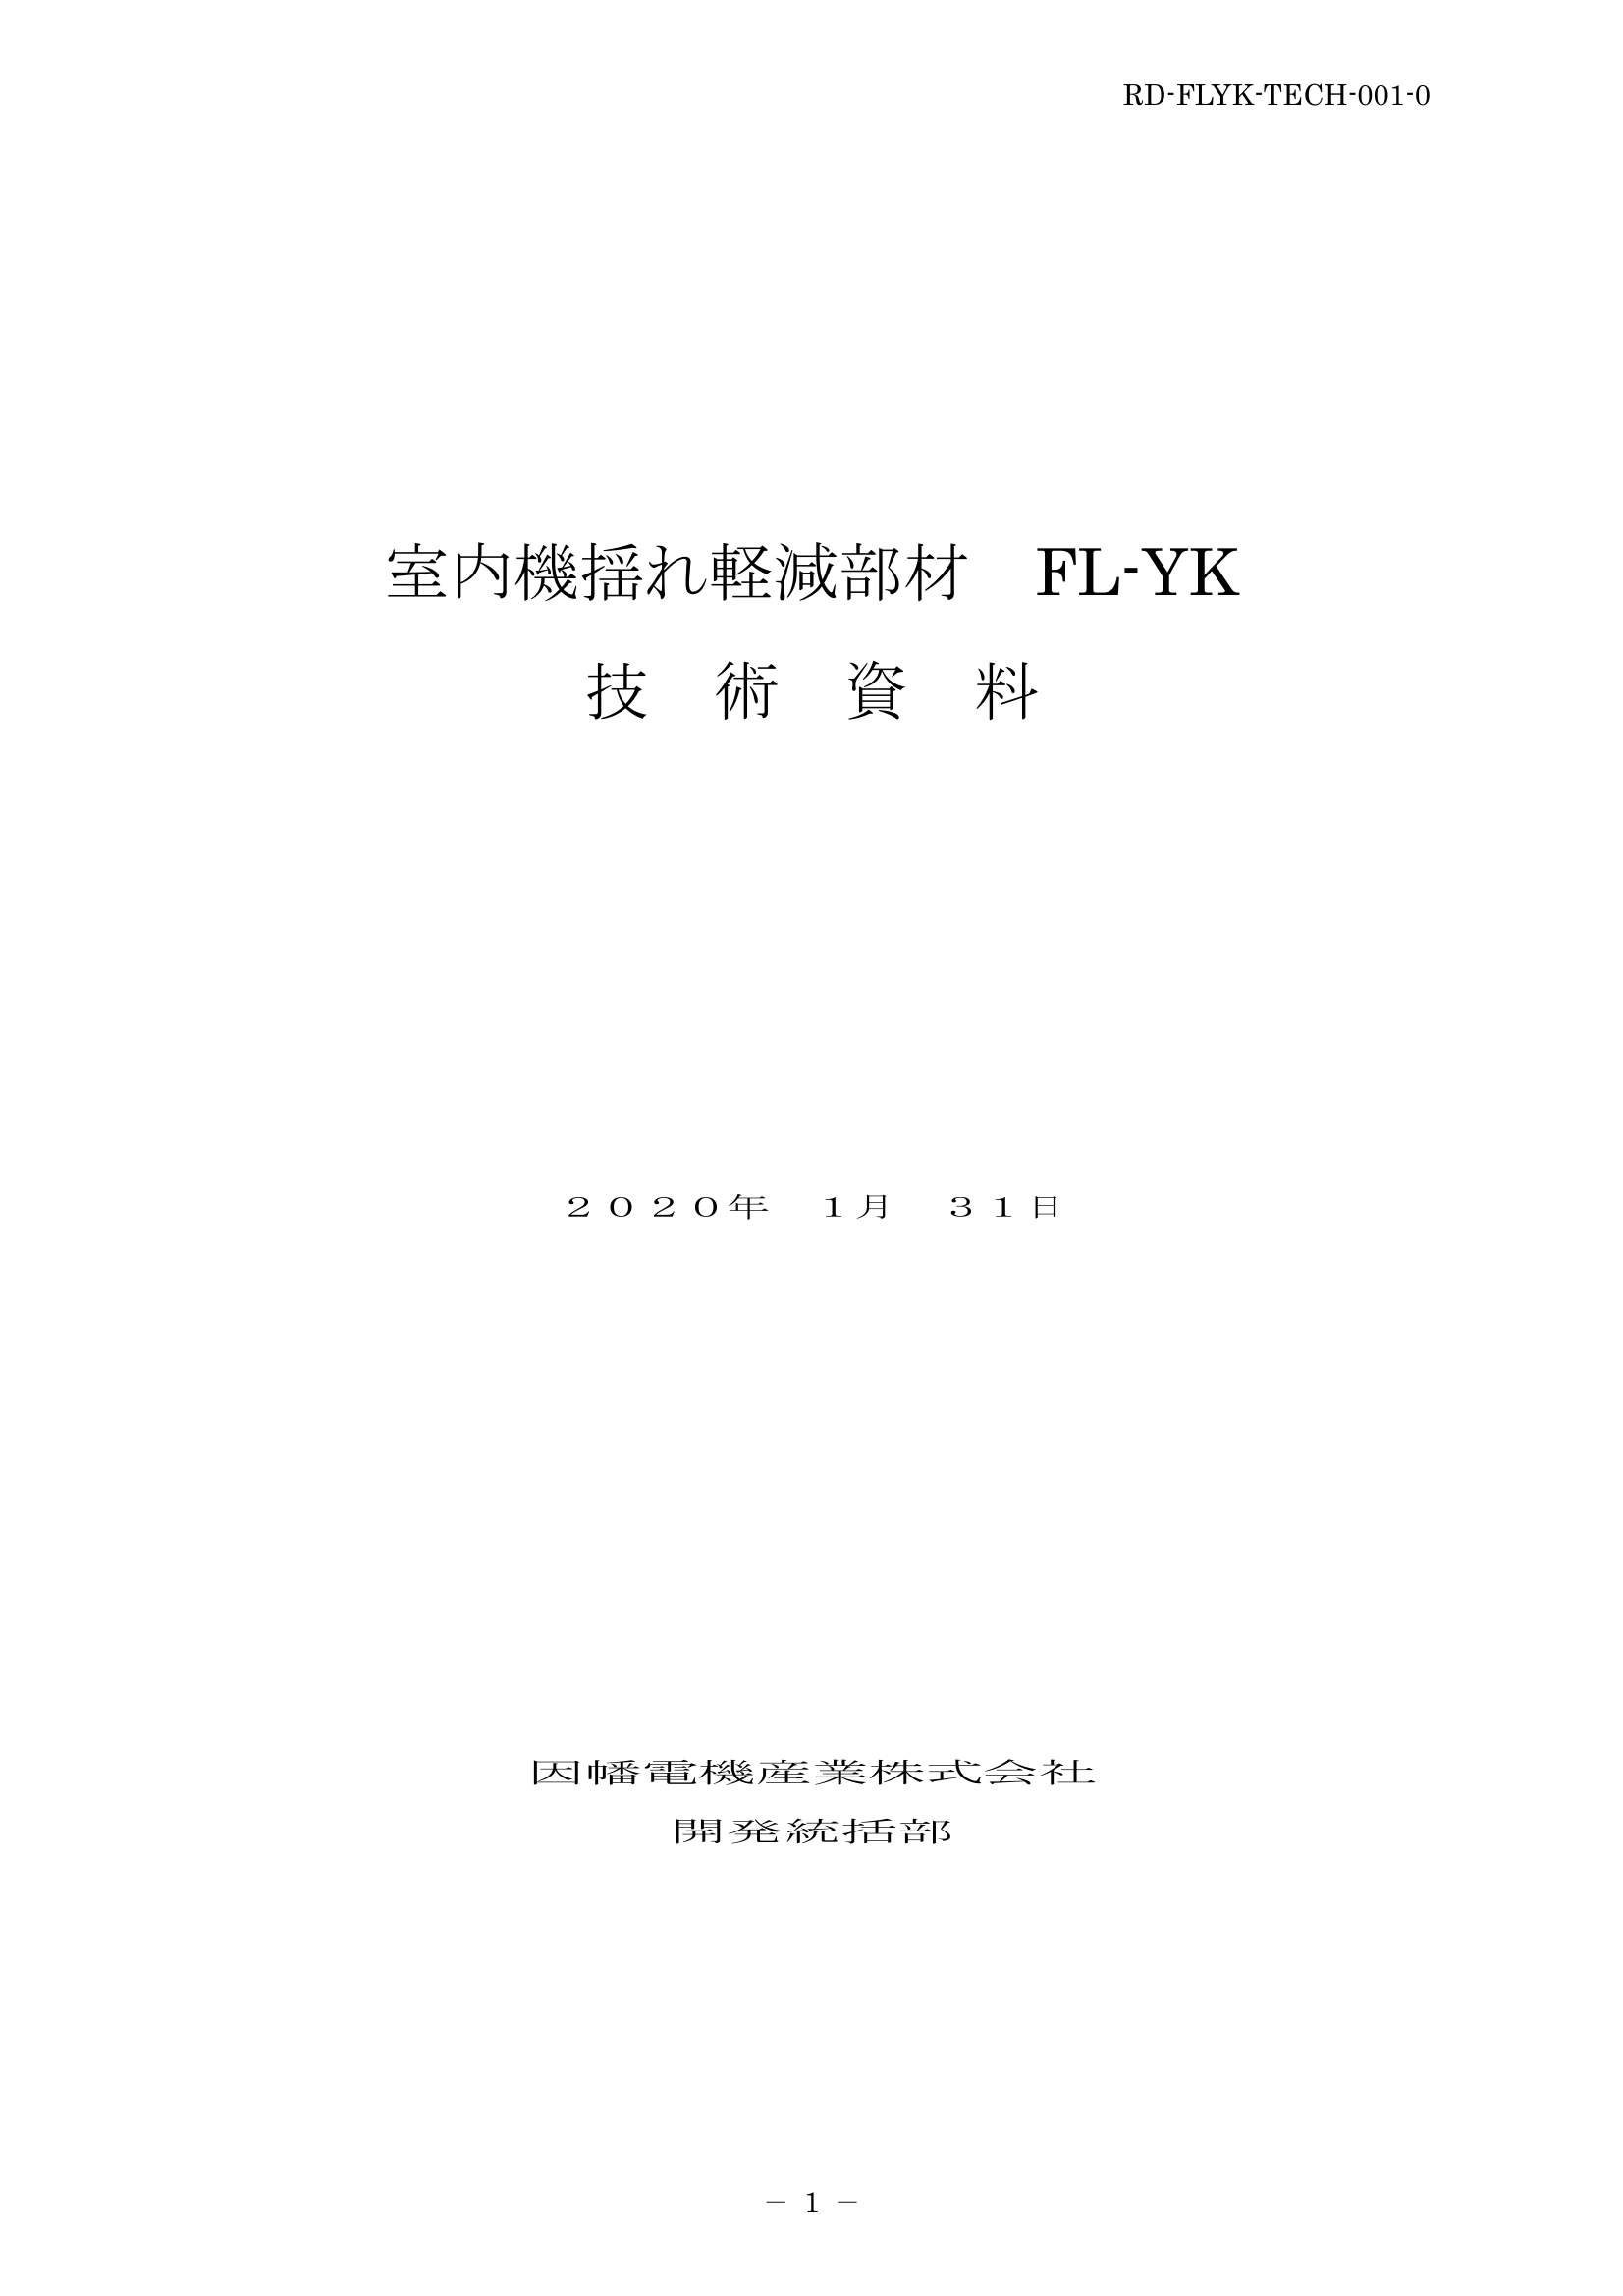 FL-YK_技術資料_20200131.pdf